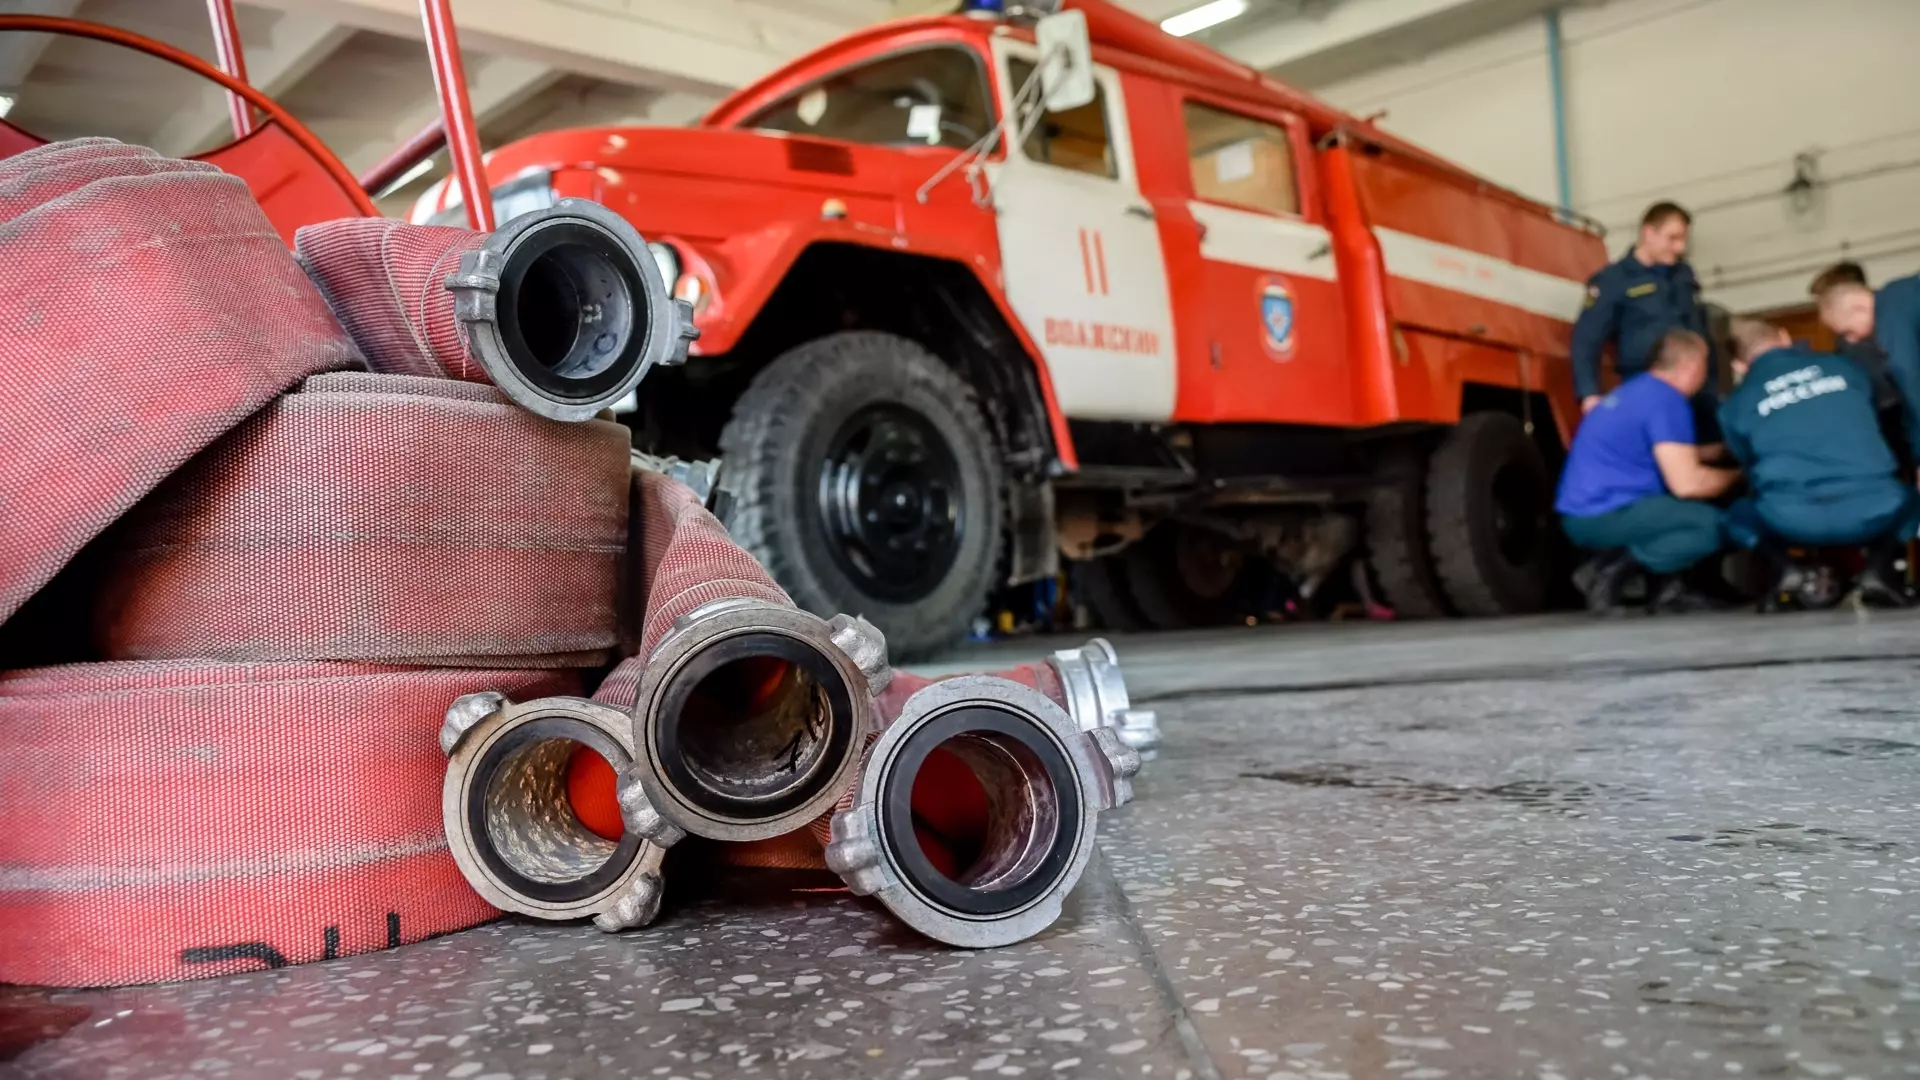 Властям поручили проверить пожарную безопасность нижегородцев перед зимой 